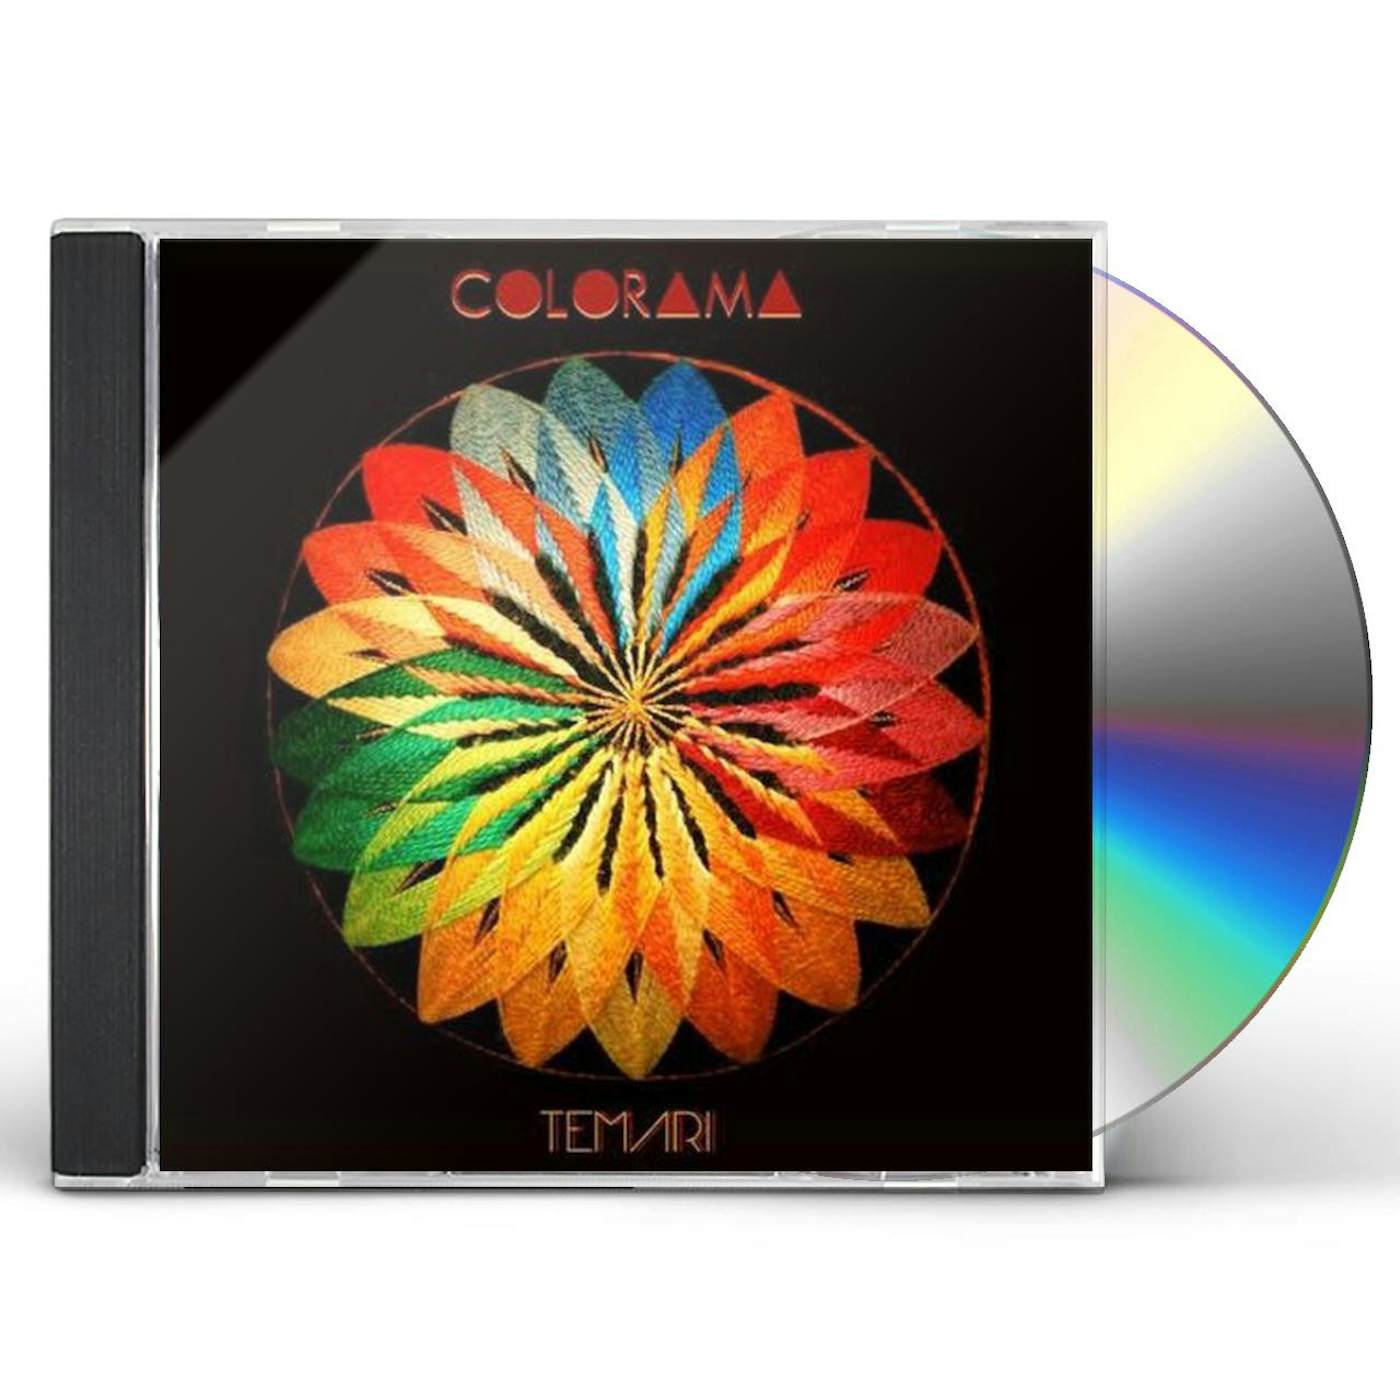 Colorama TEMARI CD - UK Release